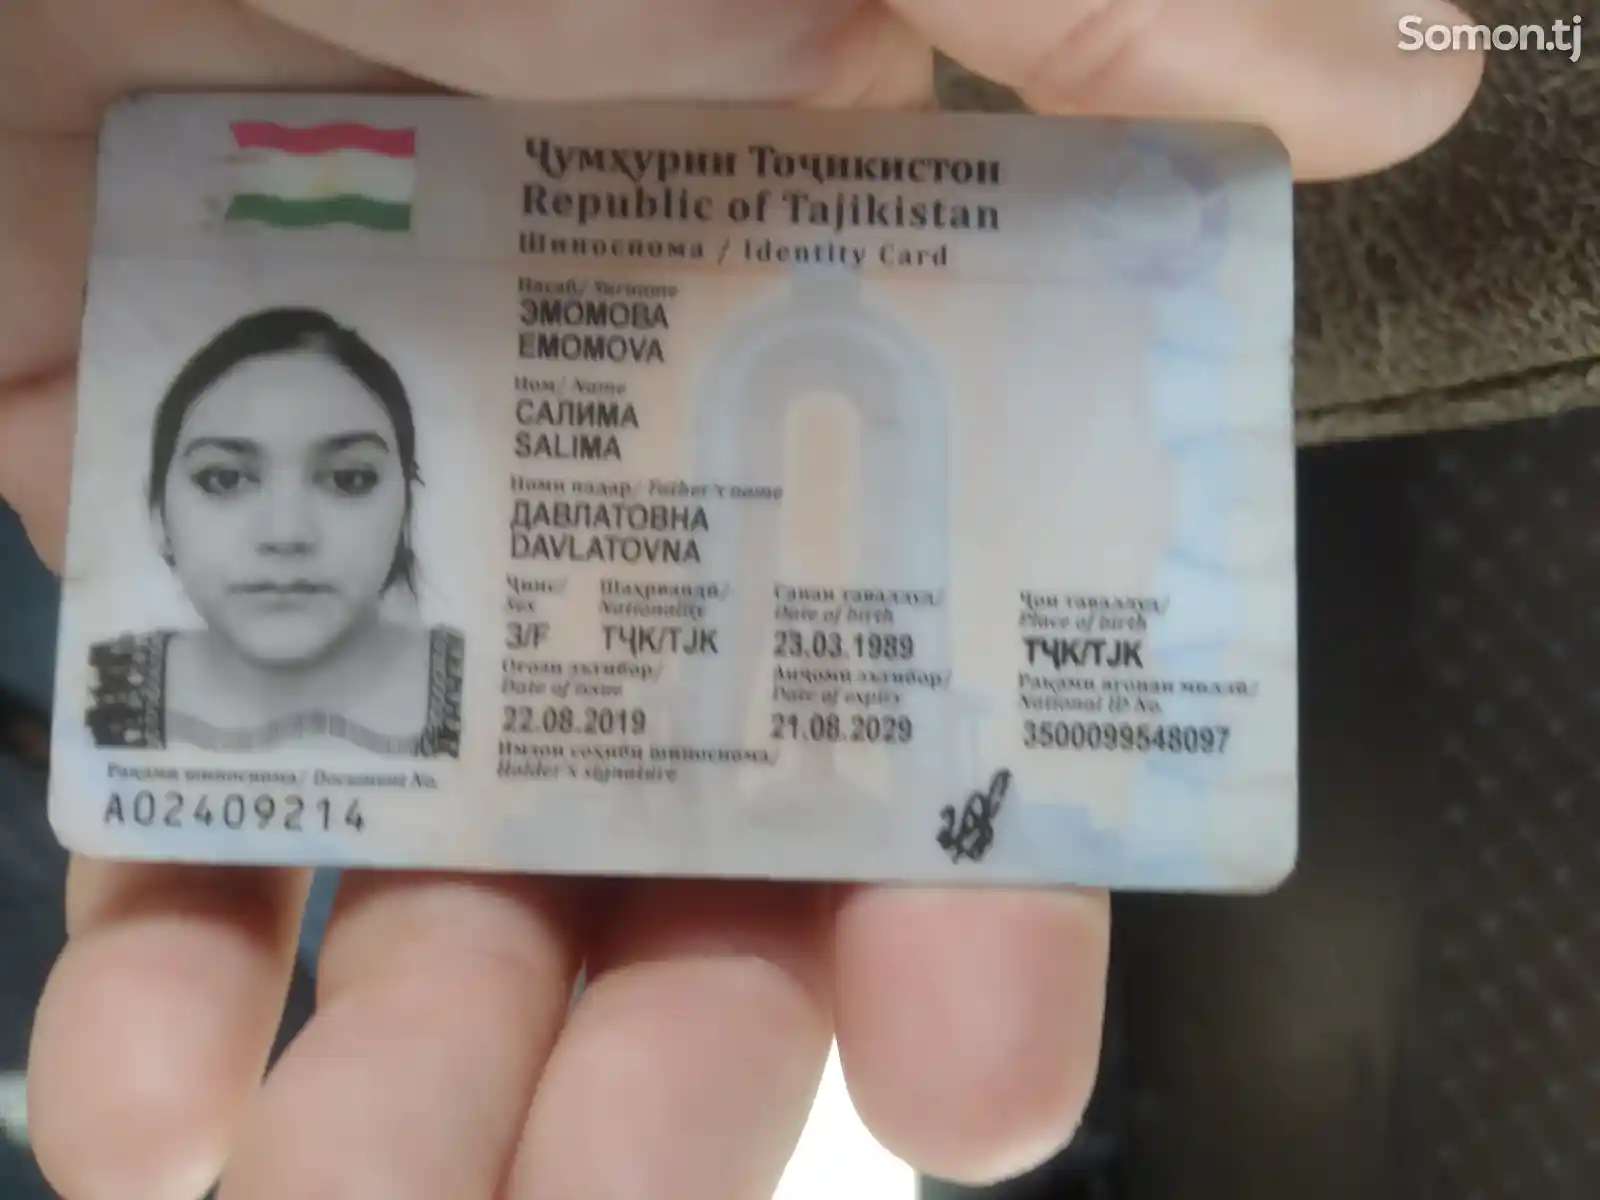 Найден паспорт на имя Эмомова Салима Давлатовна-1